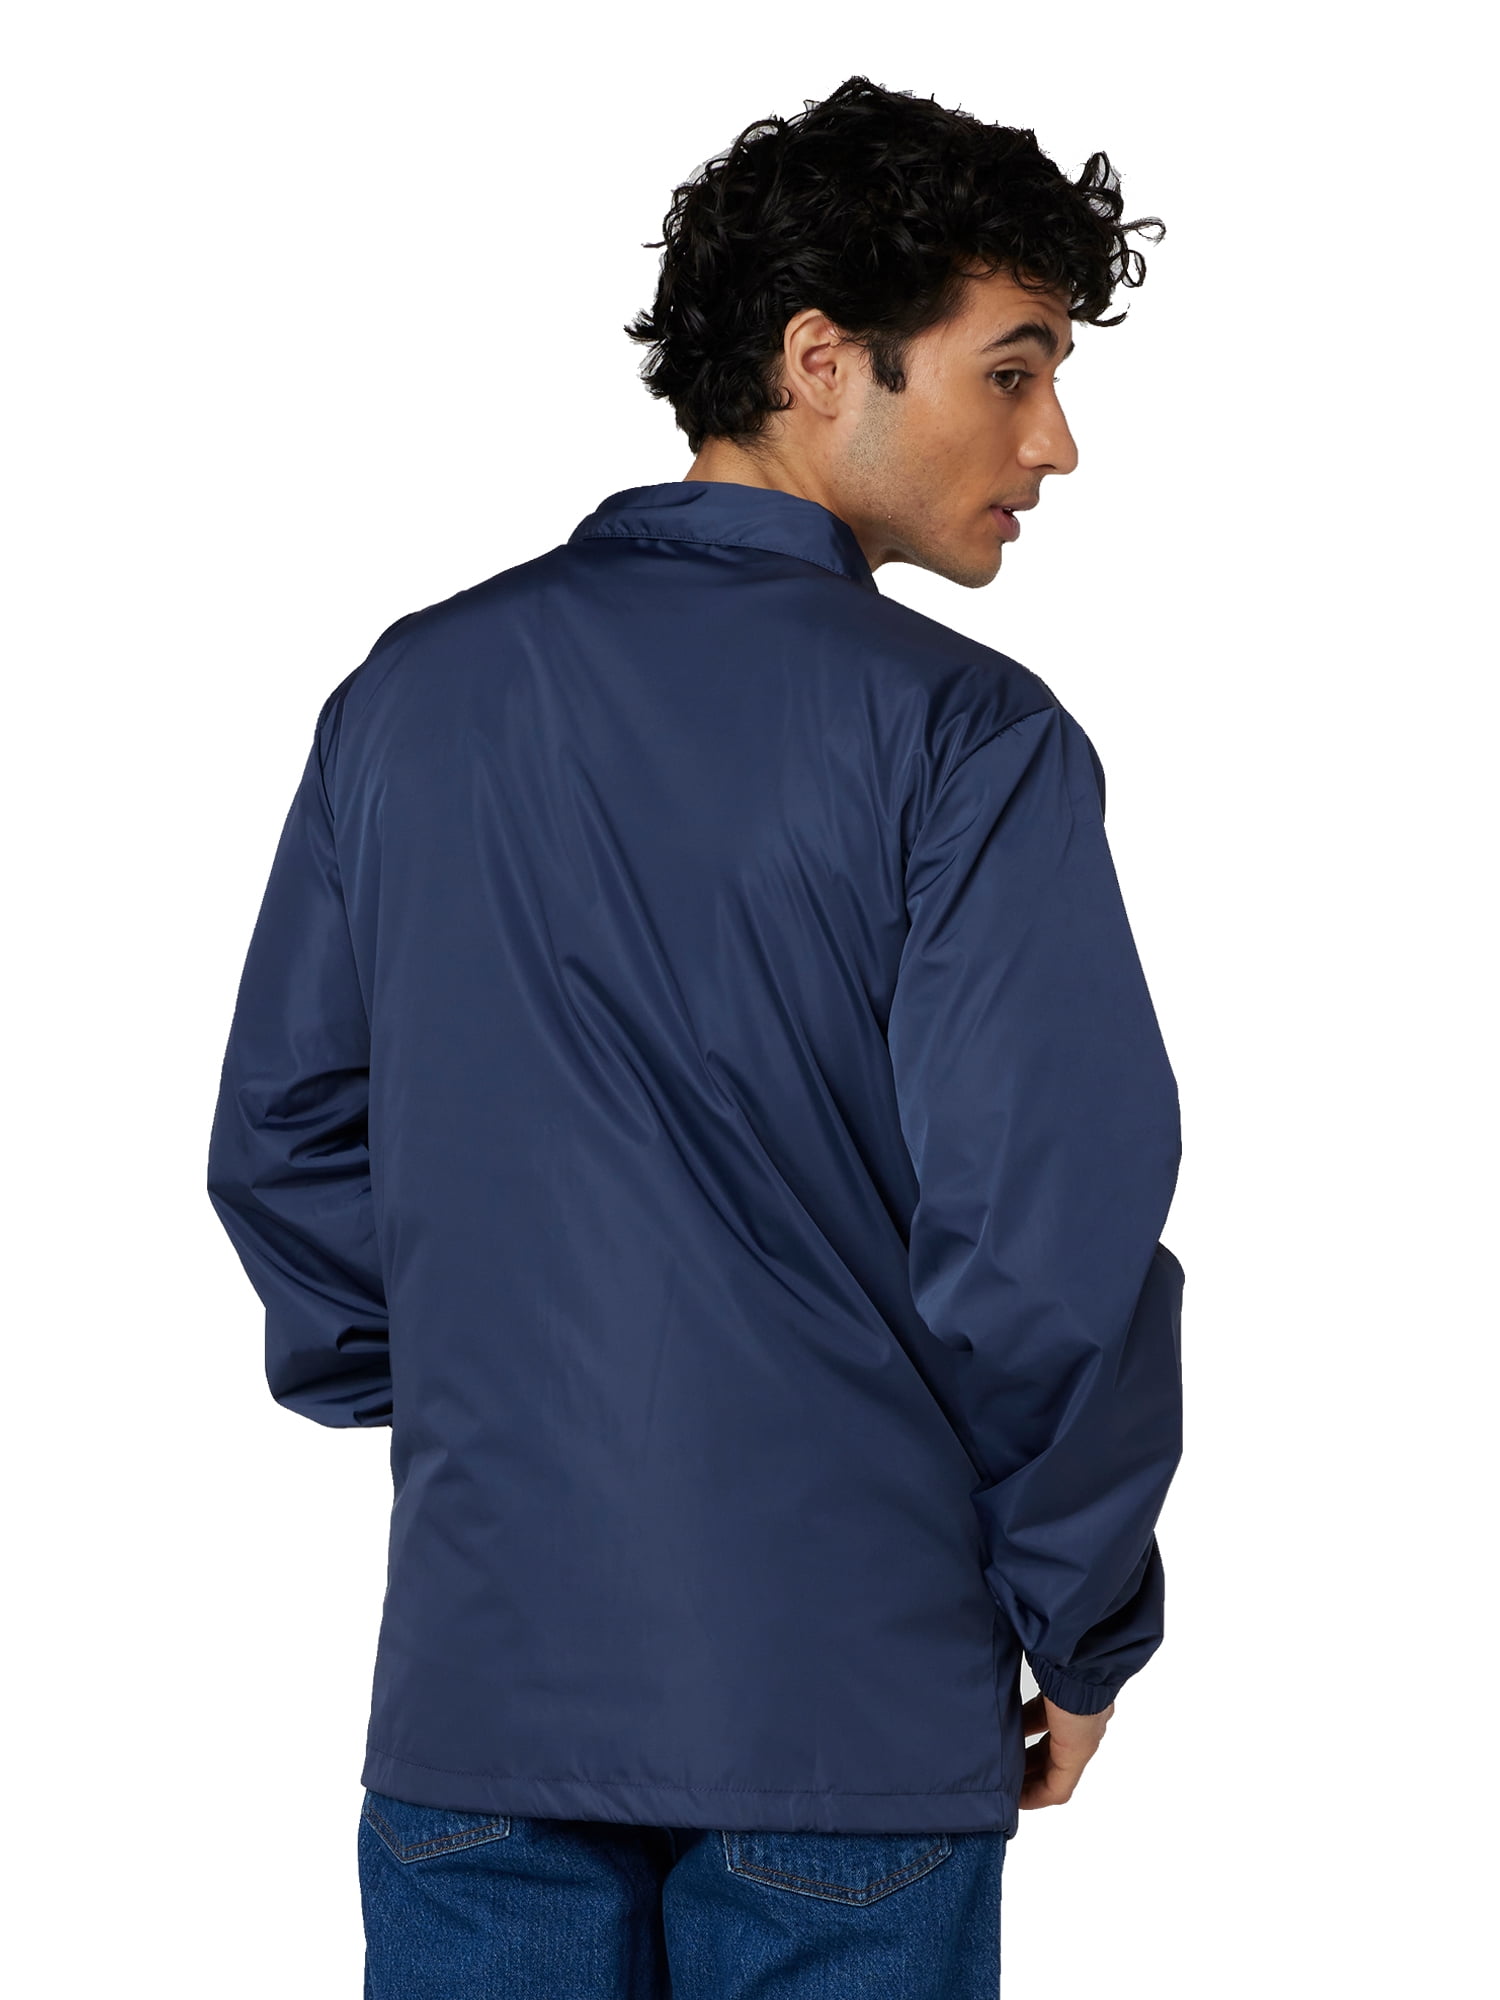 Men’s coach jacket – Stylish and Elegant Men’s Jacket缩略图